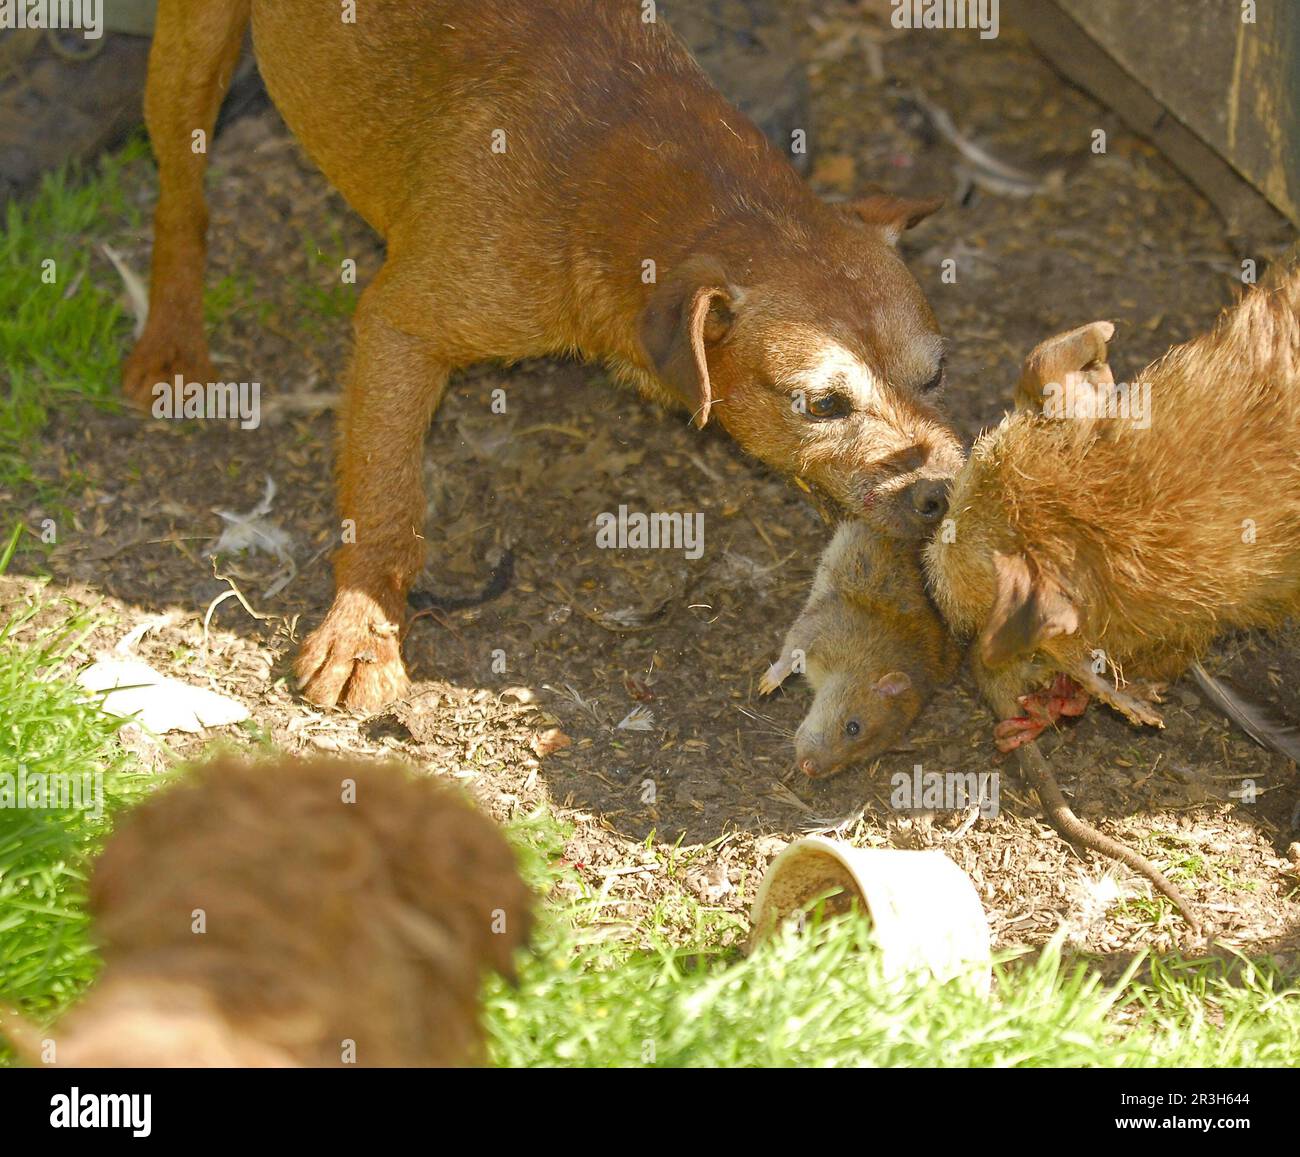 Haushund, Grenzterrer, Angriff auf die Braune Ratte (Rattus norvegicus), Ratte auf dem Bauernhof, England, Vereinigtes Königreich Stockfoto